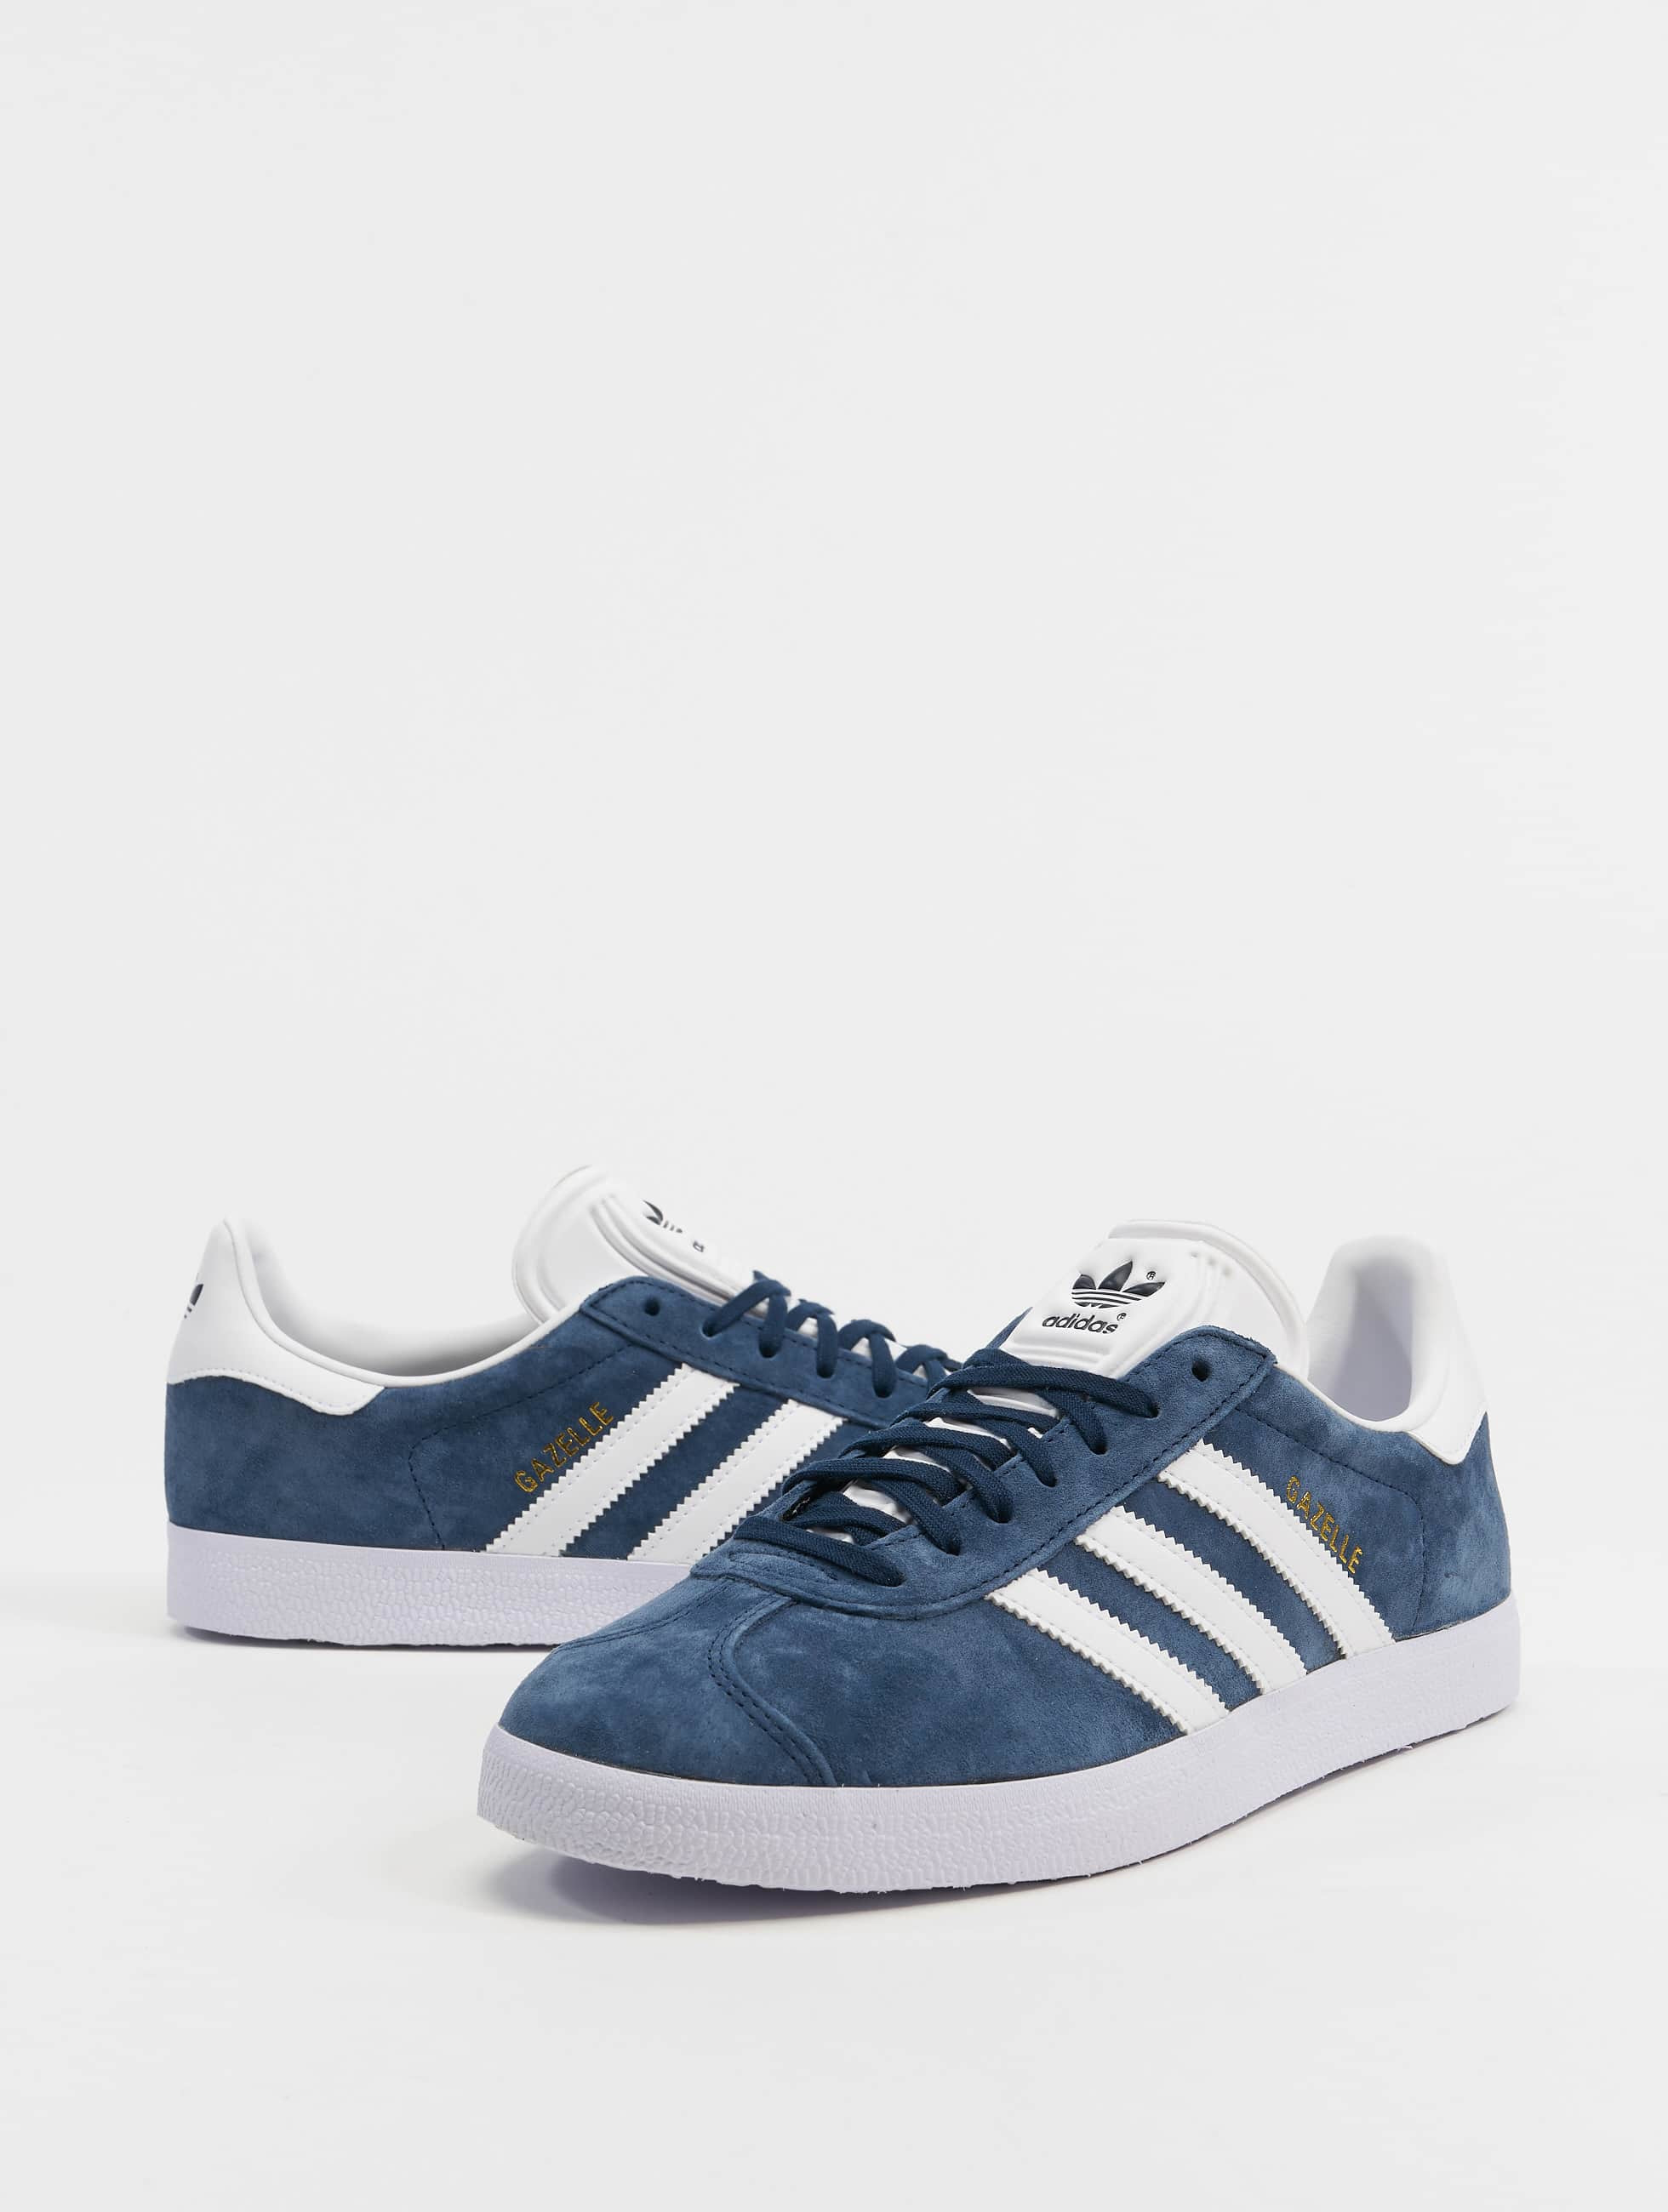 Zo snel als een flits Verlating Perforatie adidas Originals schoen / sneaker Gazelle in blauw 684093